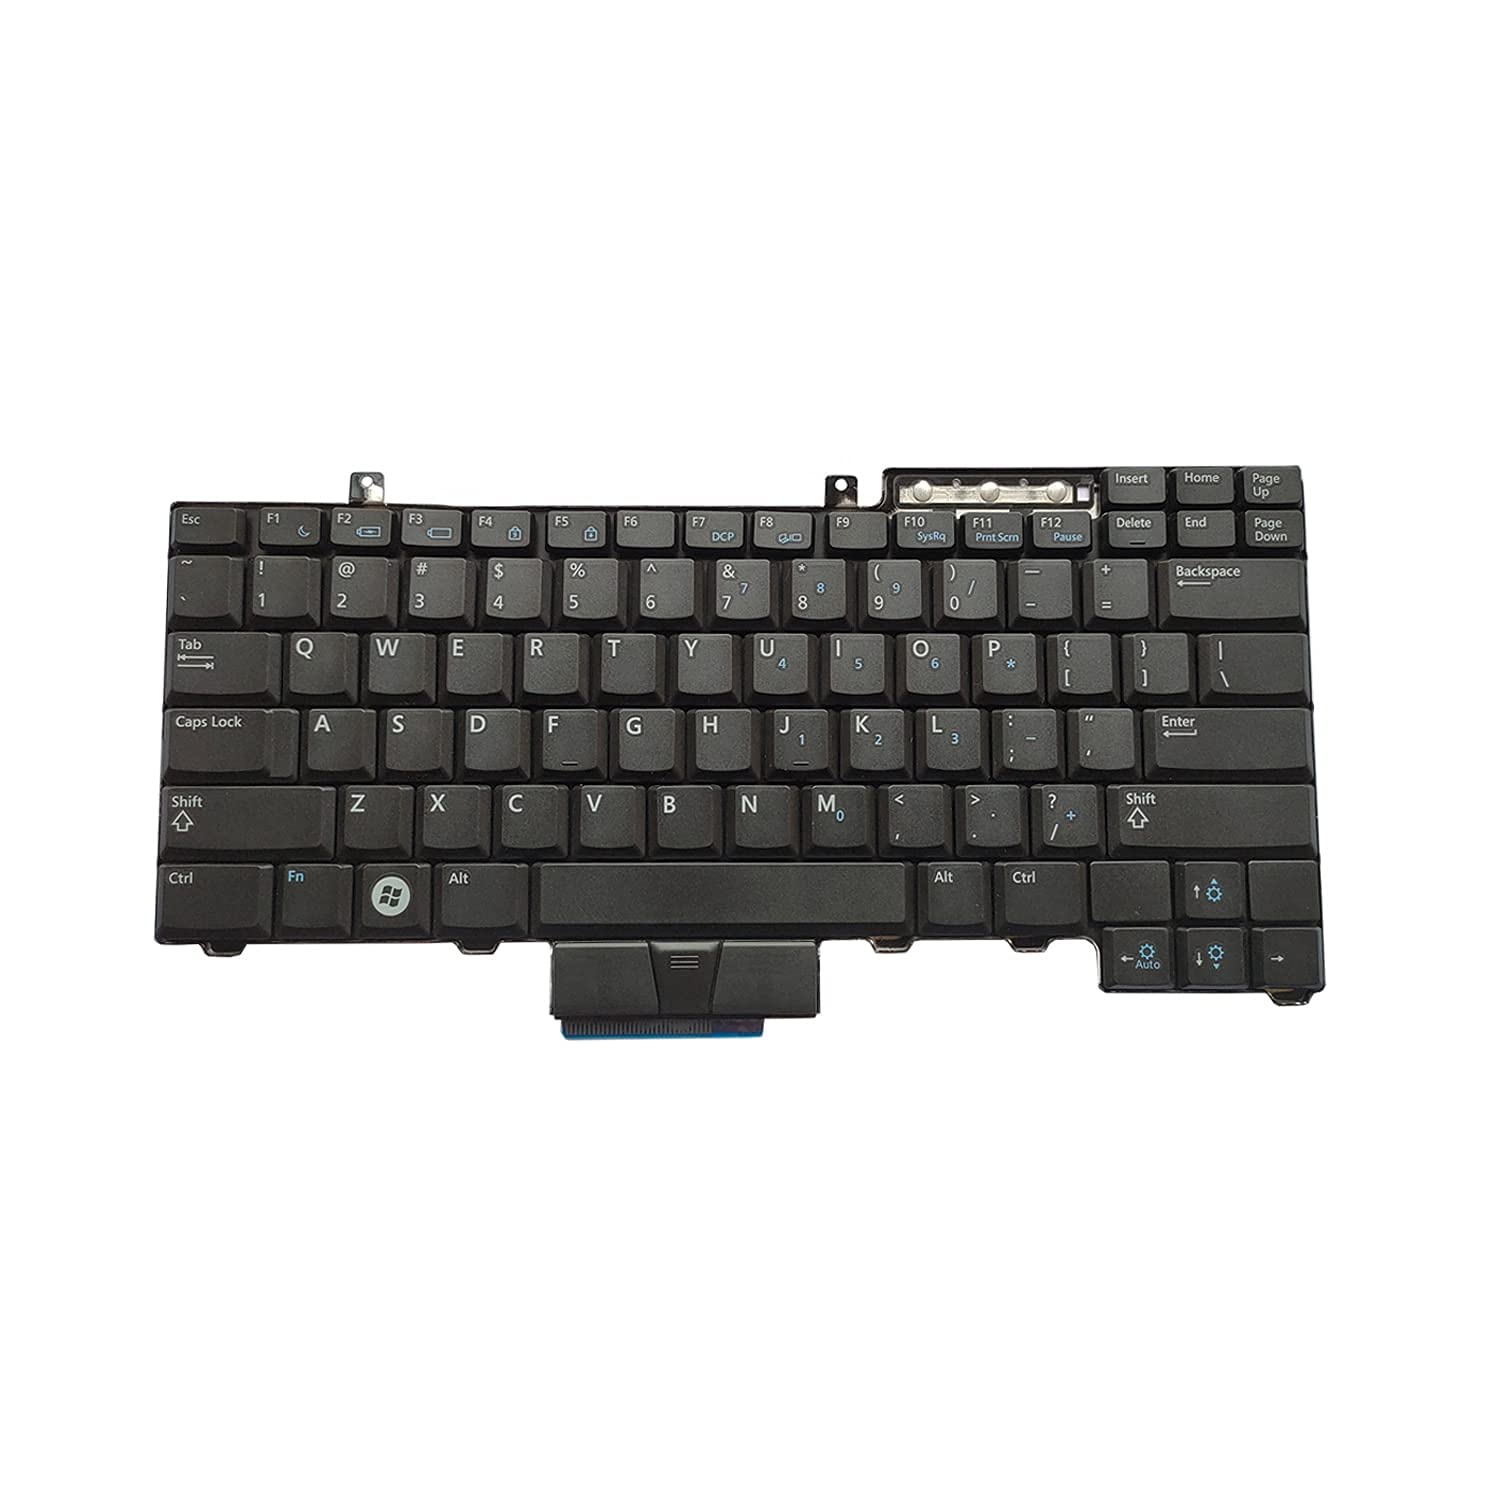 WISTAR Laptop Keyboard Compatible for Dell Latitude E6400 E6500 Precision M2400 M4400 Series